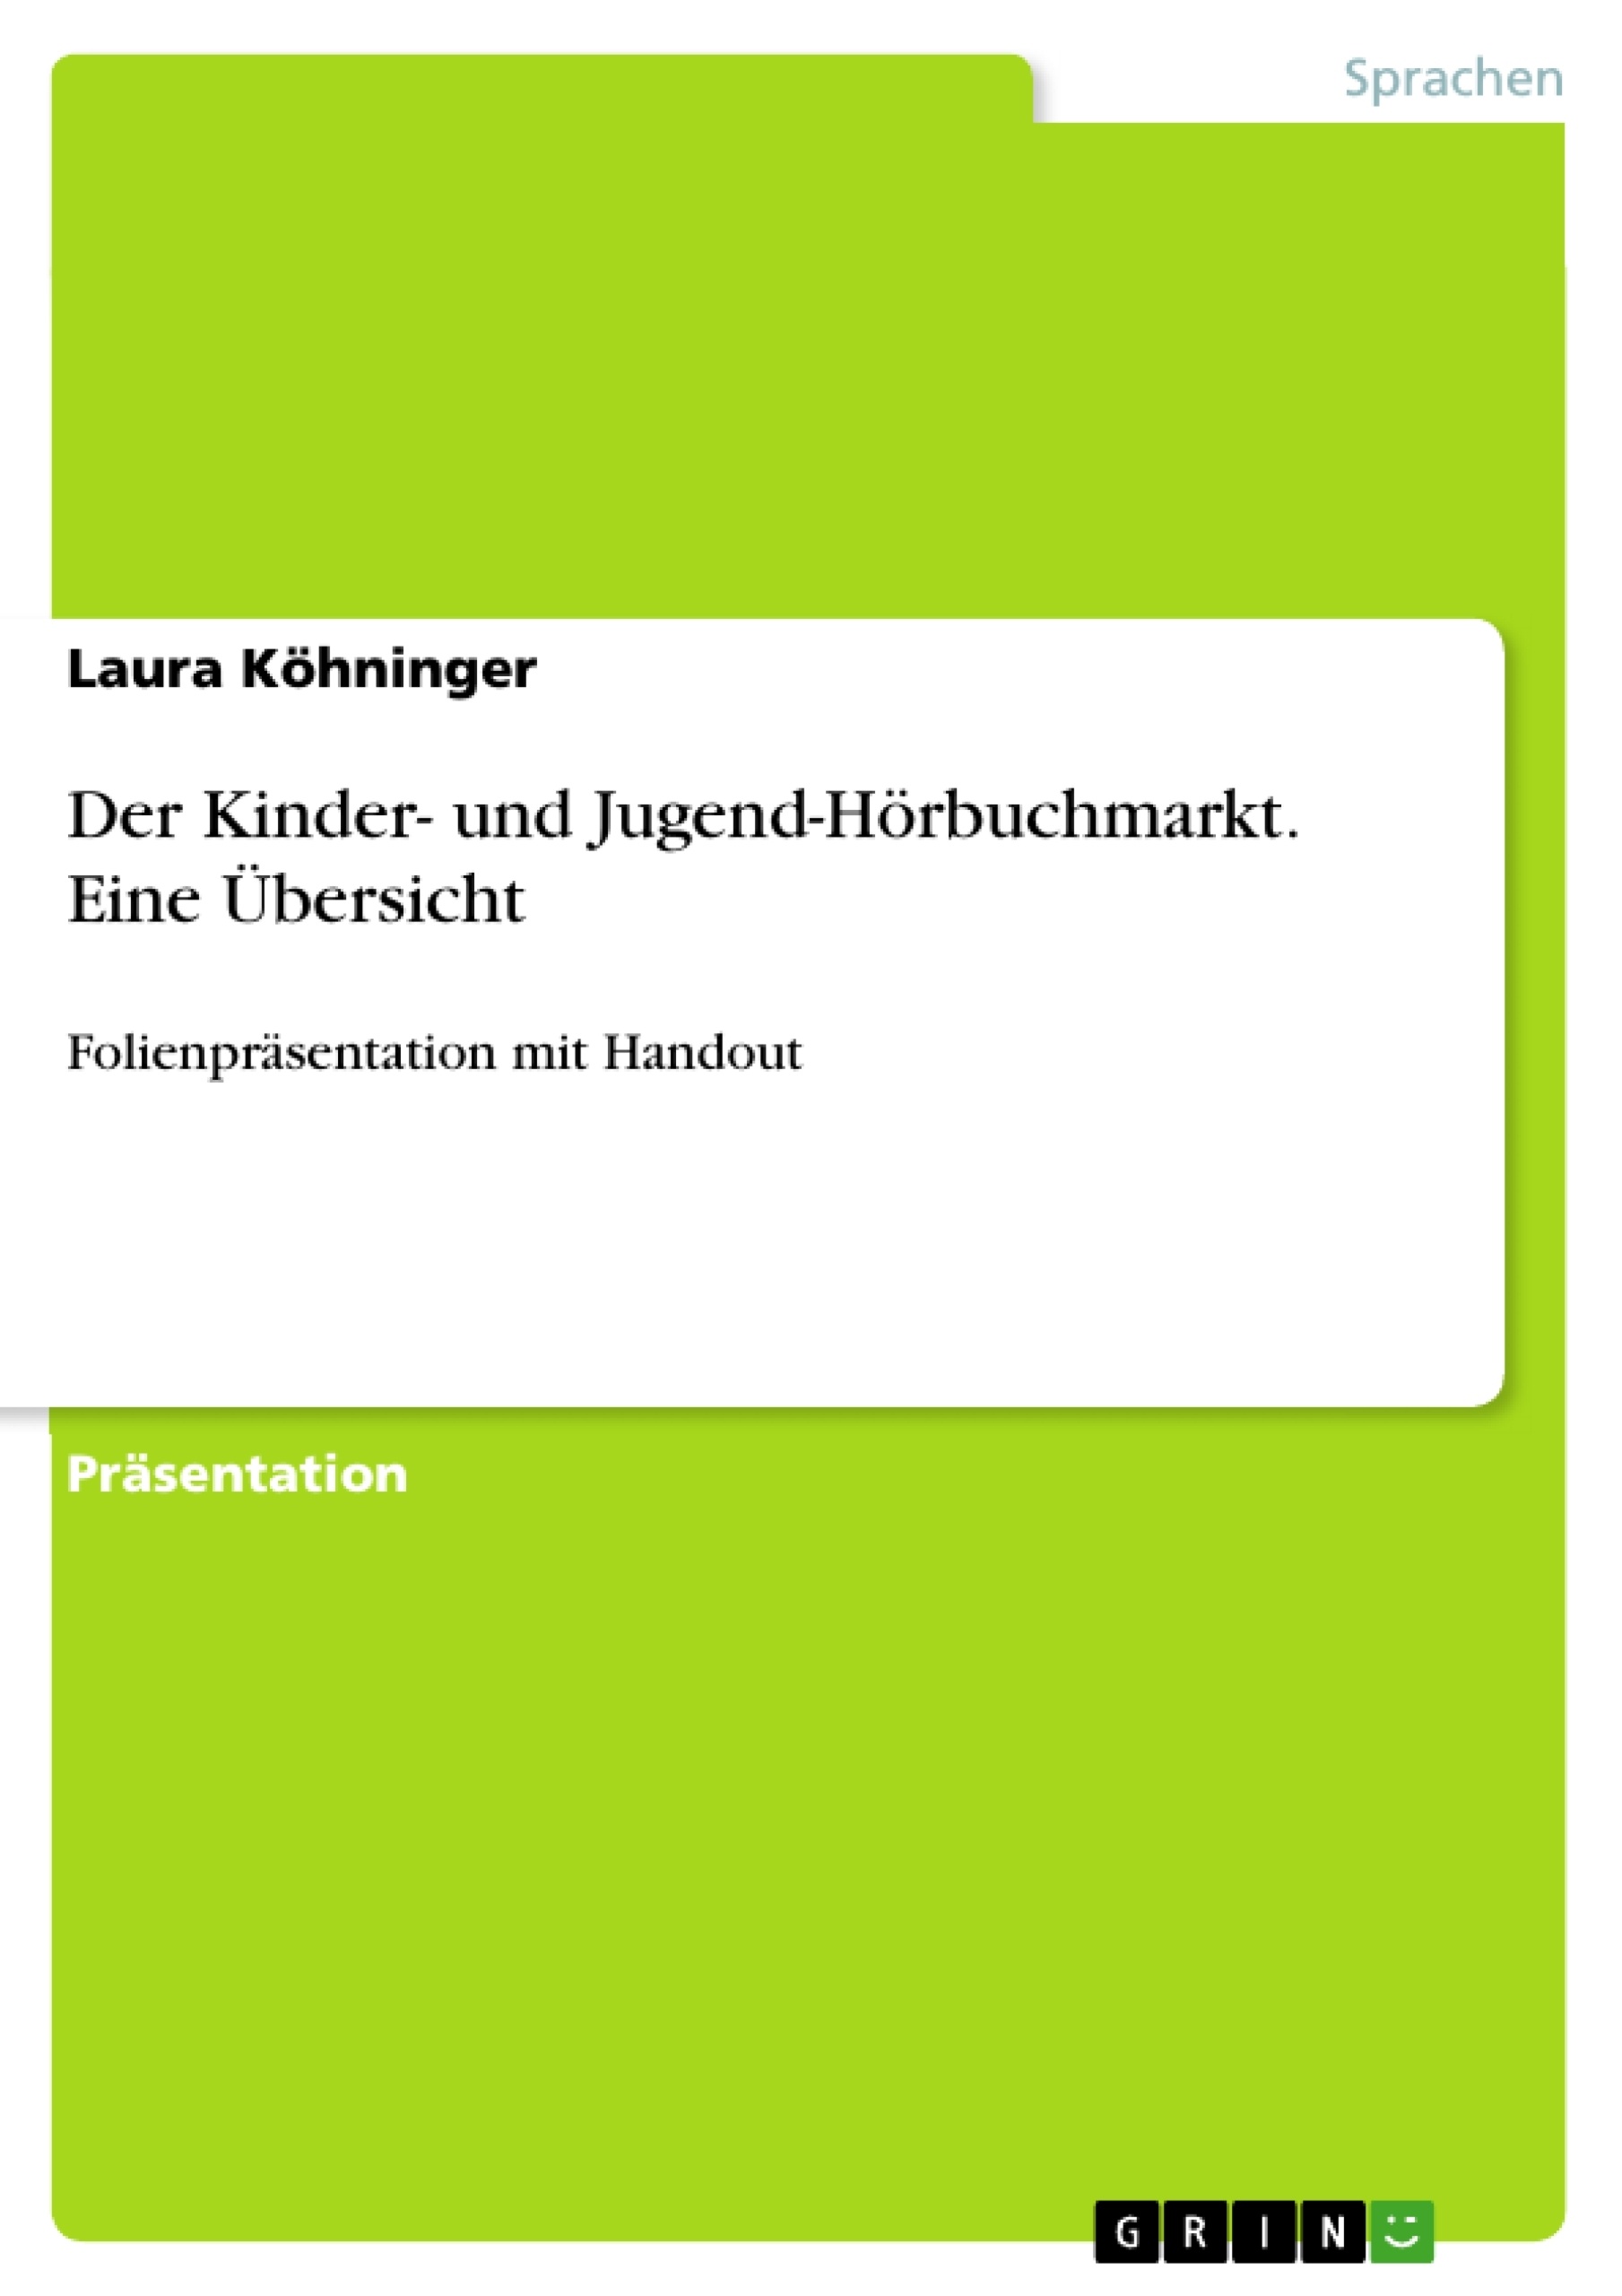 Title: Der Kinder- und Jugend-Hörbuchmarkt. Eine Übersicht